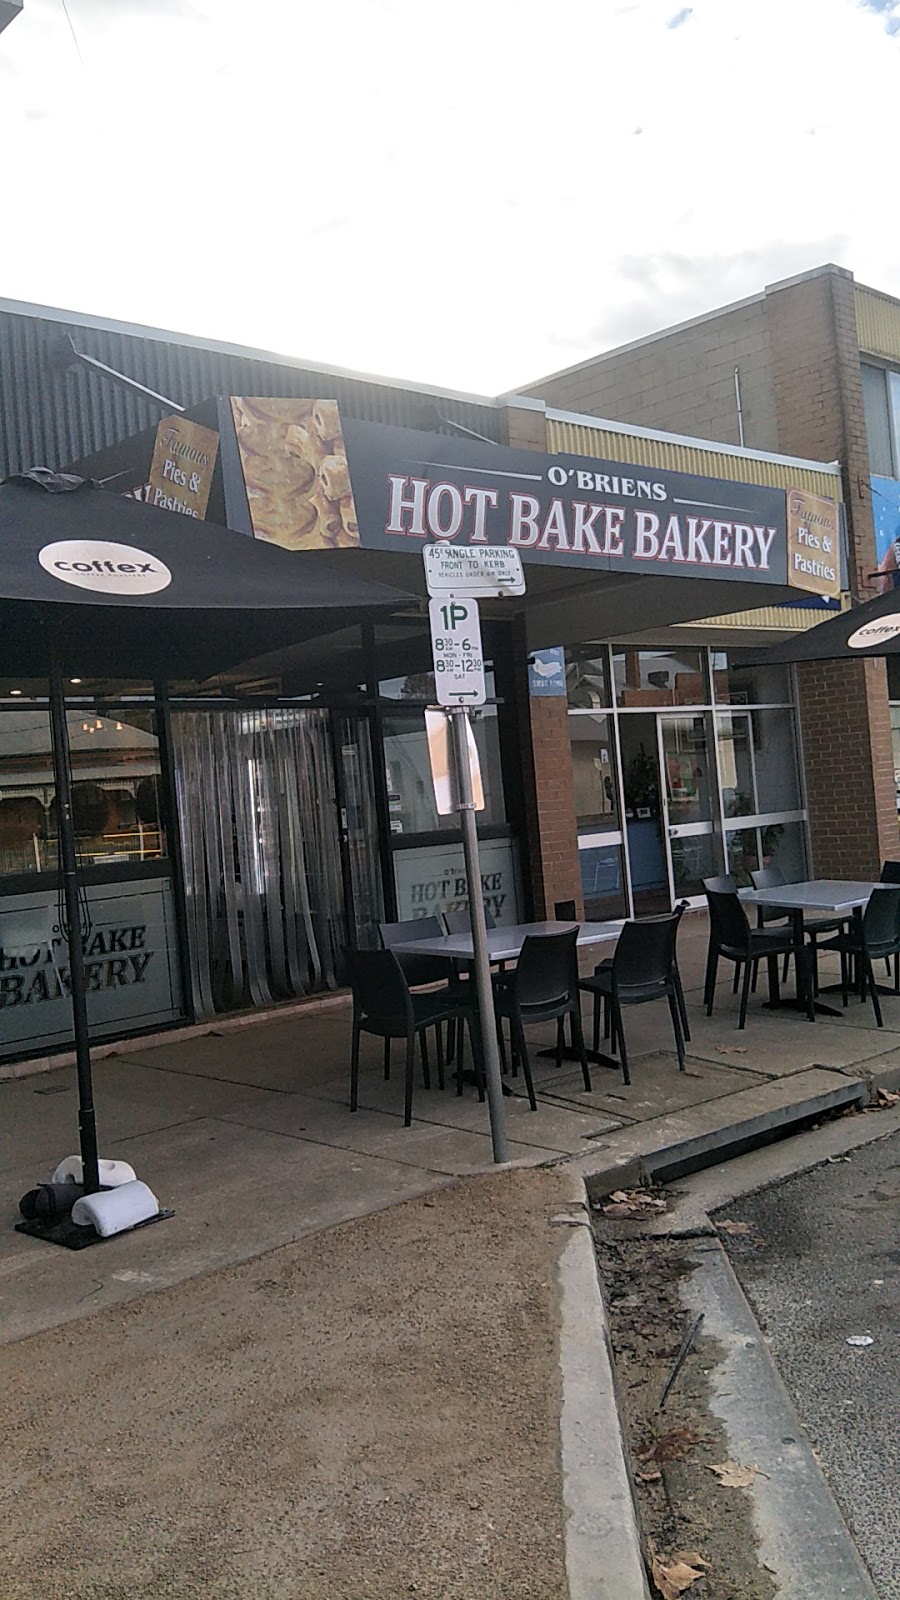 OBriens Wagga Hot Bake Bakery | bakery | 89A Morgan St, Wagga Wagga NSW 2650, Australia | 0269214400 OR +61 2 6921 4400